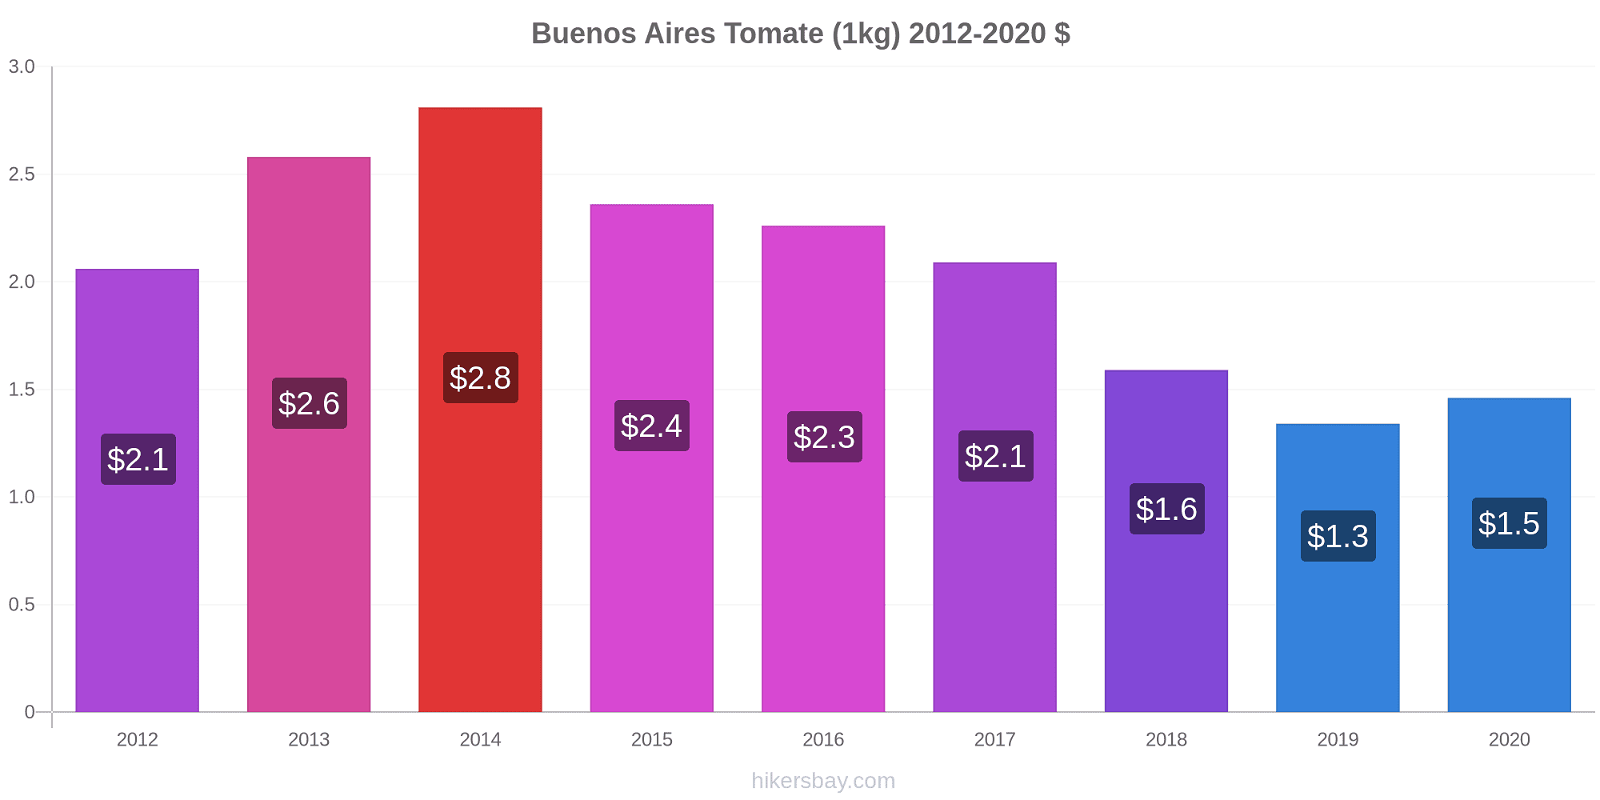 Buenos Aires cambios de precios Tomate (1kg) hikersbay.com